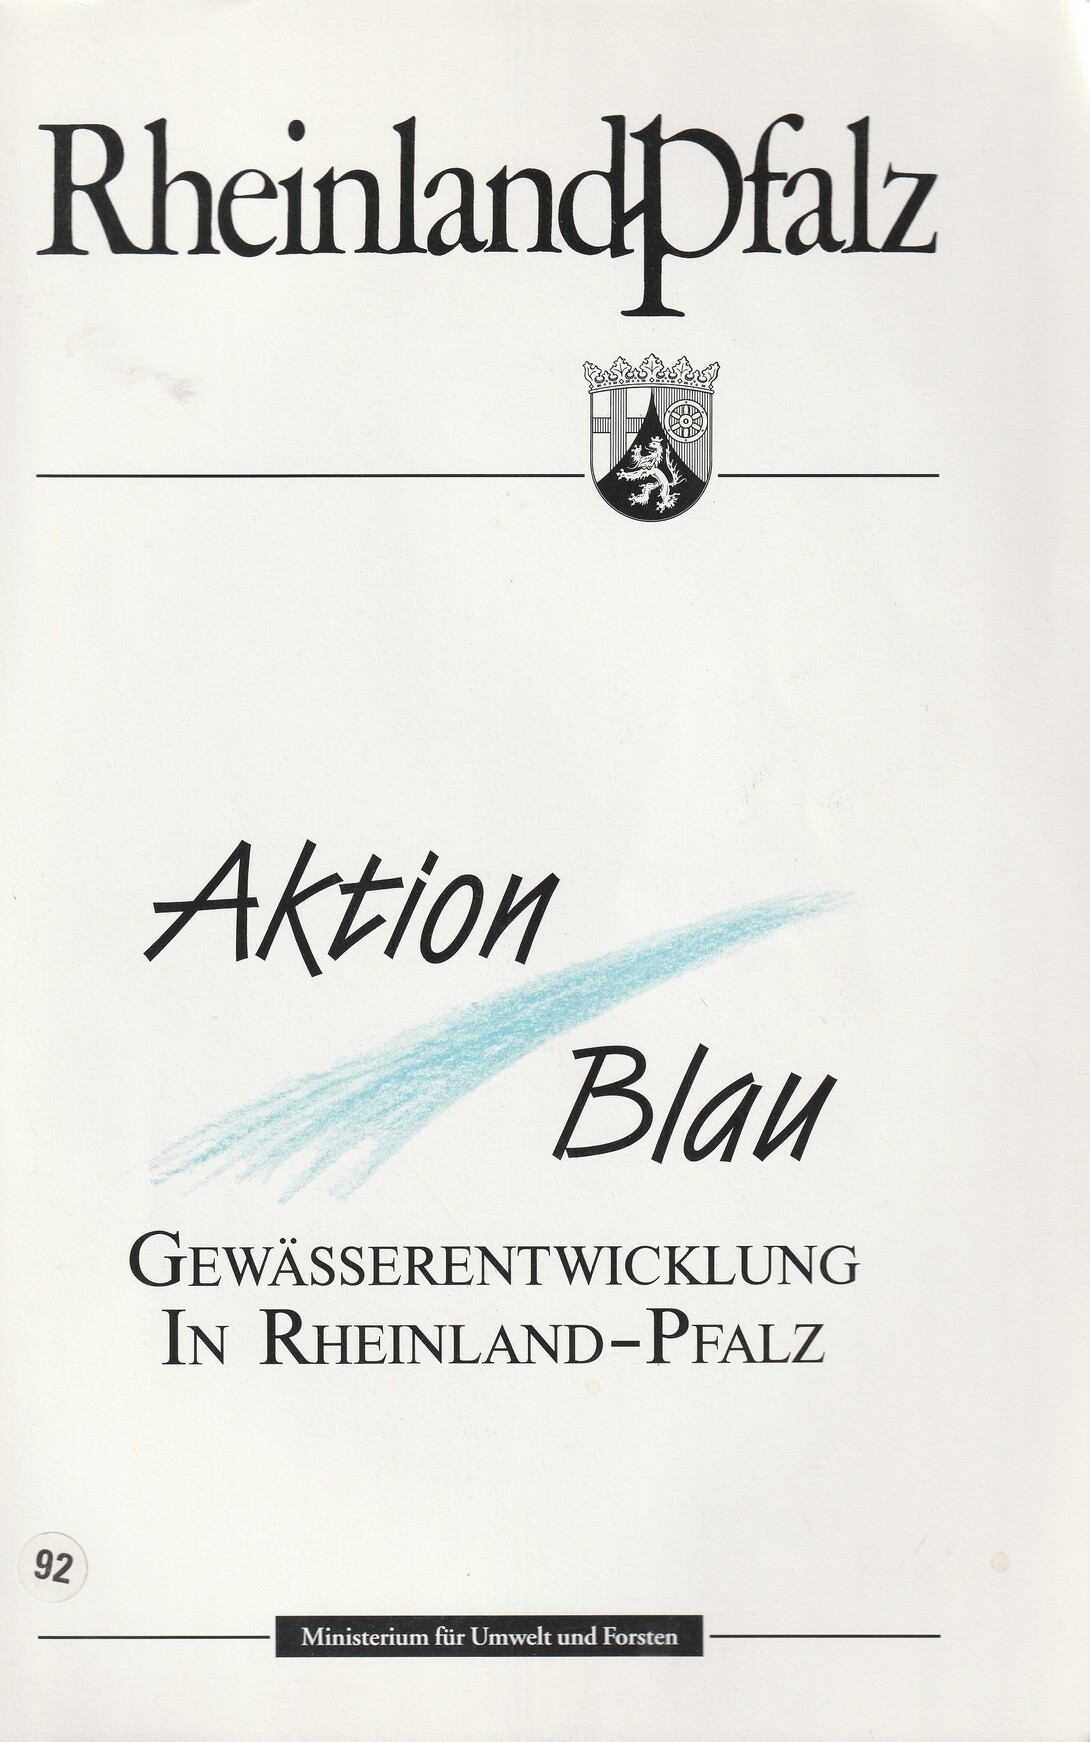 Aktion Blau, Gewässerentwicklung n Rheinland-Pfalz (Kulturverein Guntersblum CC BY-NC-SA)